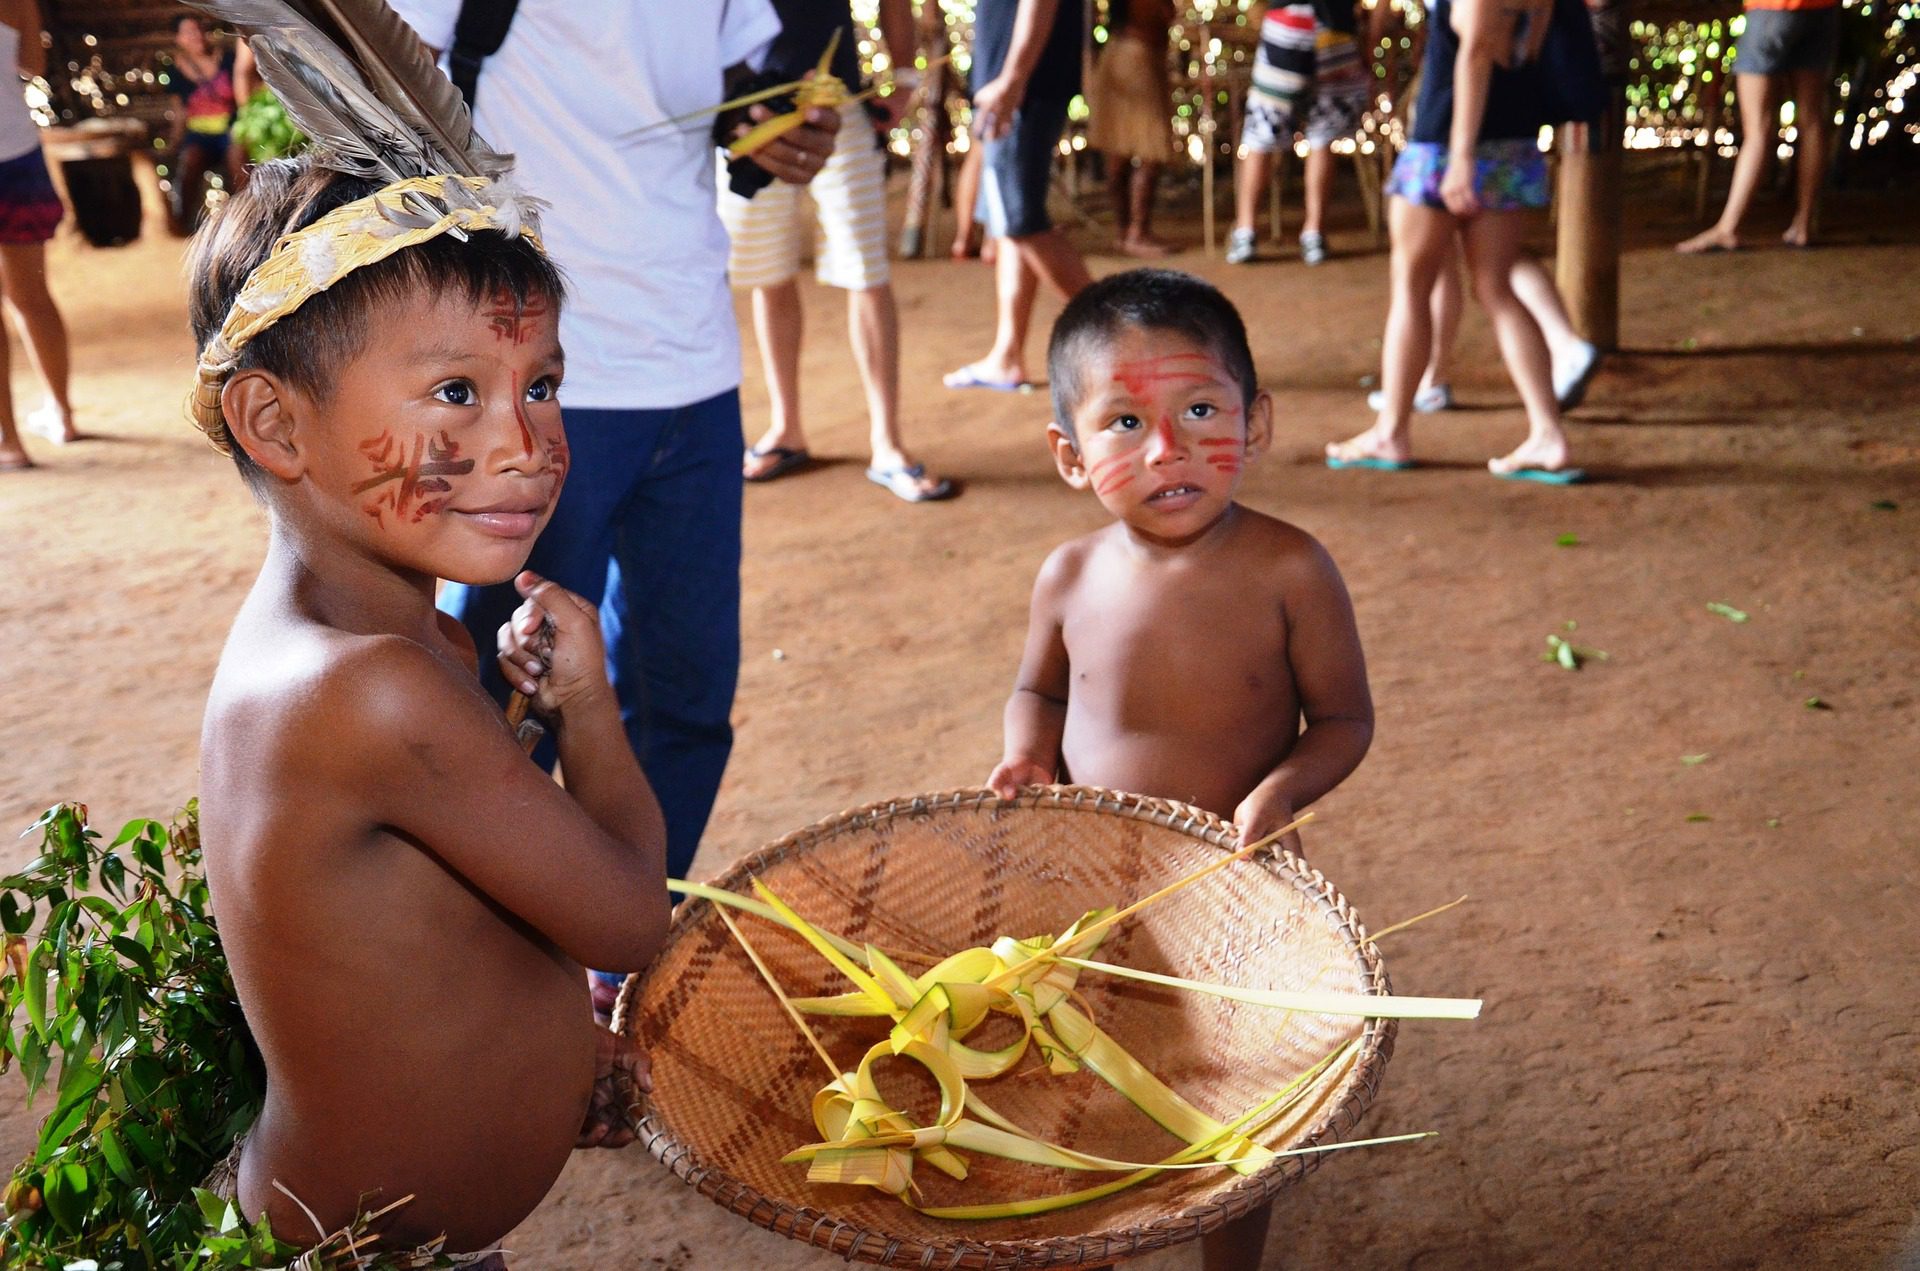 Brincadeiras em todo lugar: Jogos indígenas 